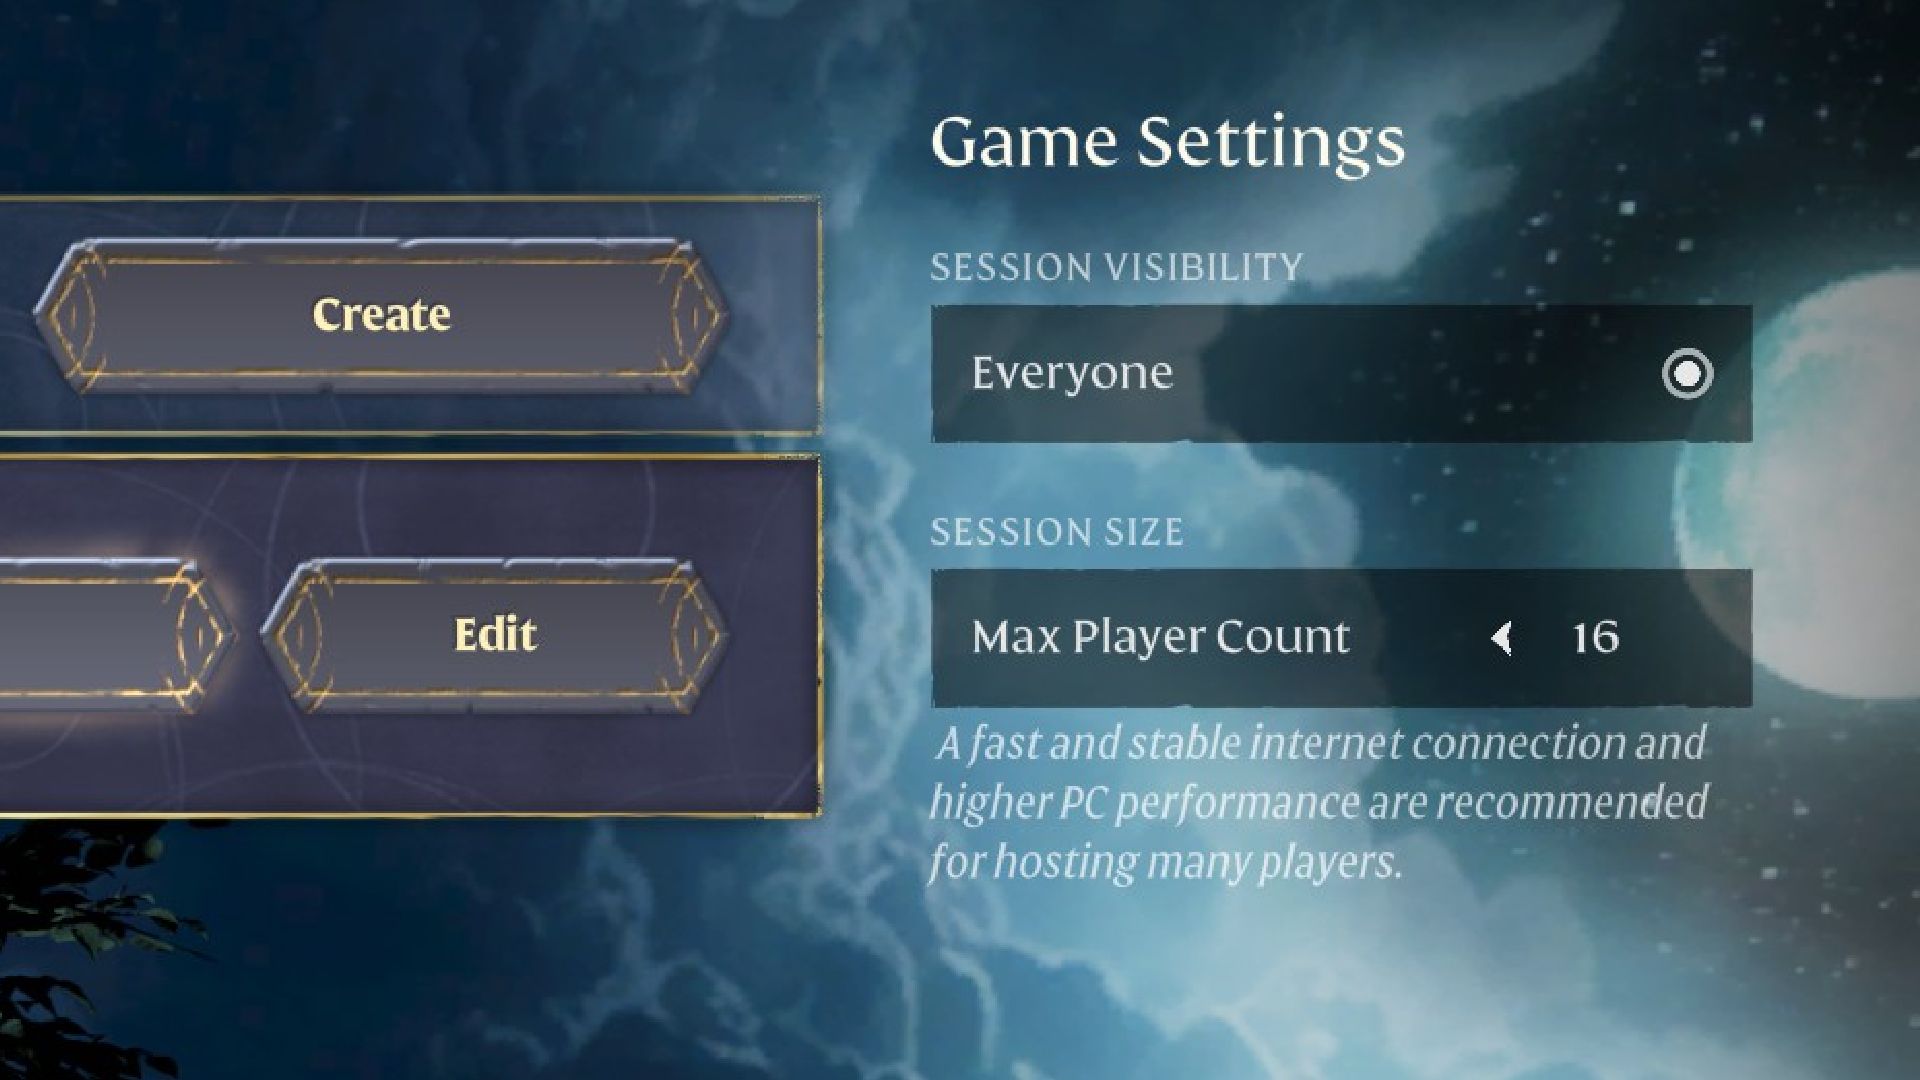 enshrouded game settings for hosting